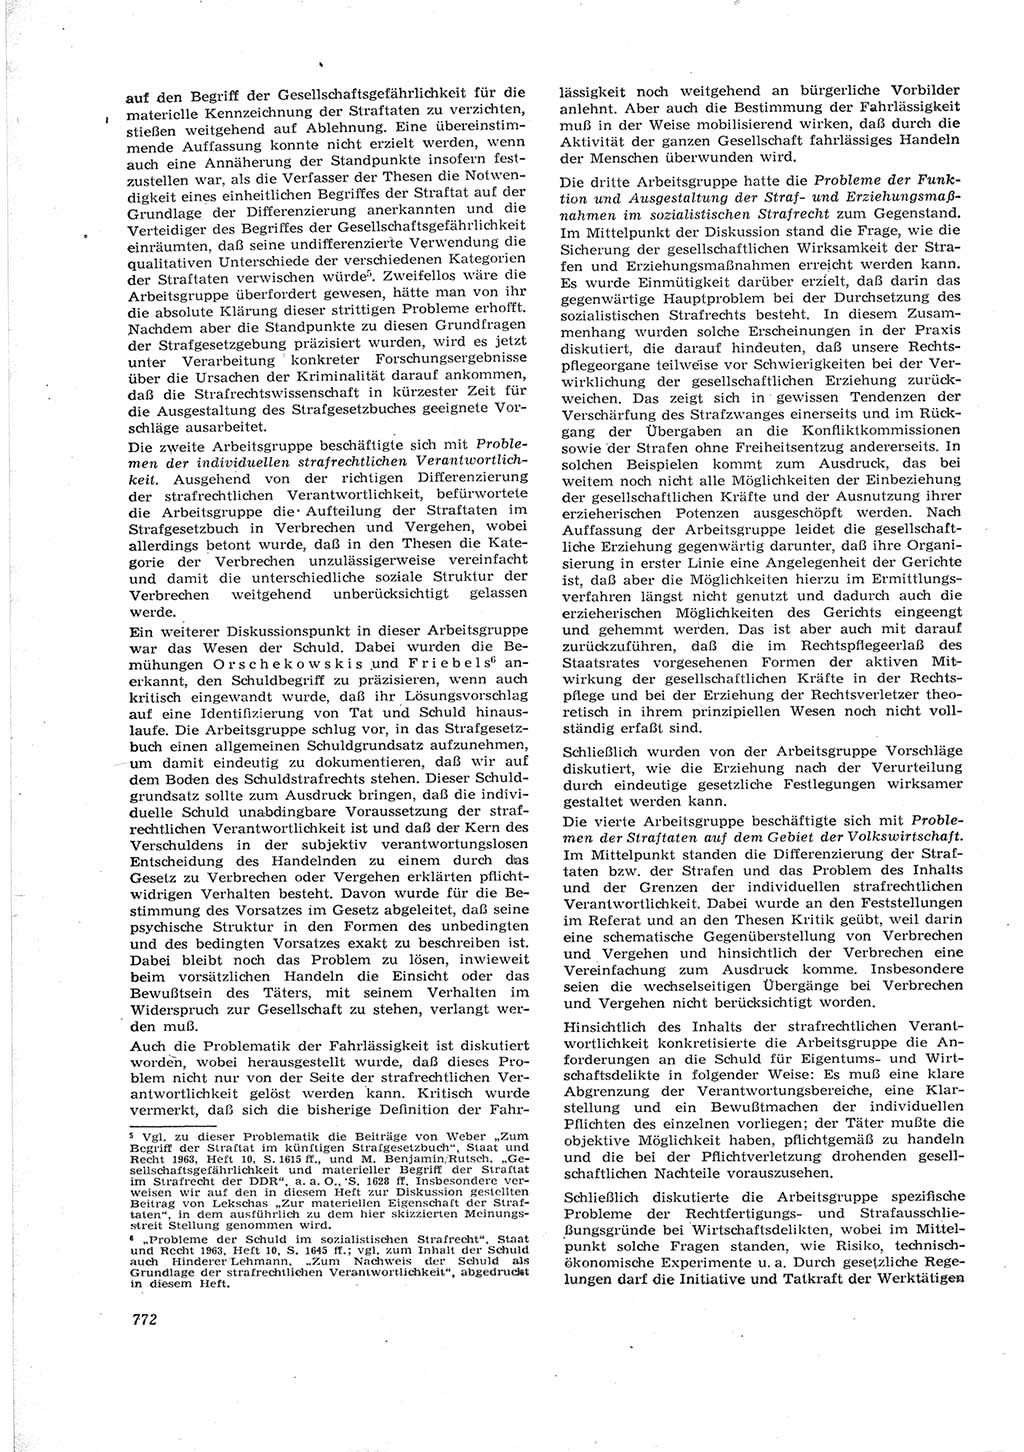 Neue Justiz (NJ), Zeitschrift für Recht und Rechtswissenschaft [Deutsche Demokratische Republik (DDR)], 17. Jahrgang 1963, Seite 772 (NJ DDR 1963, S. 772)